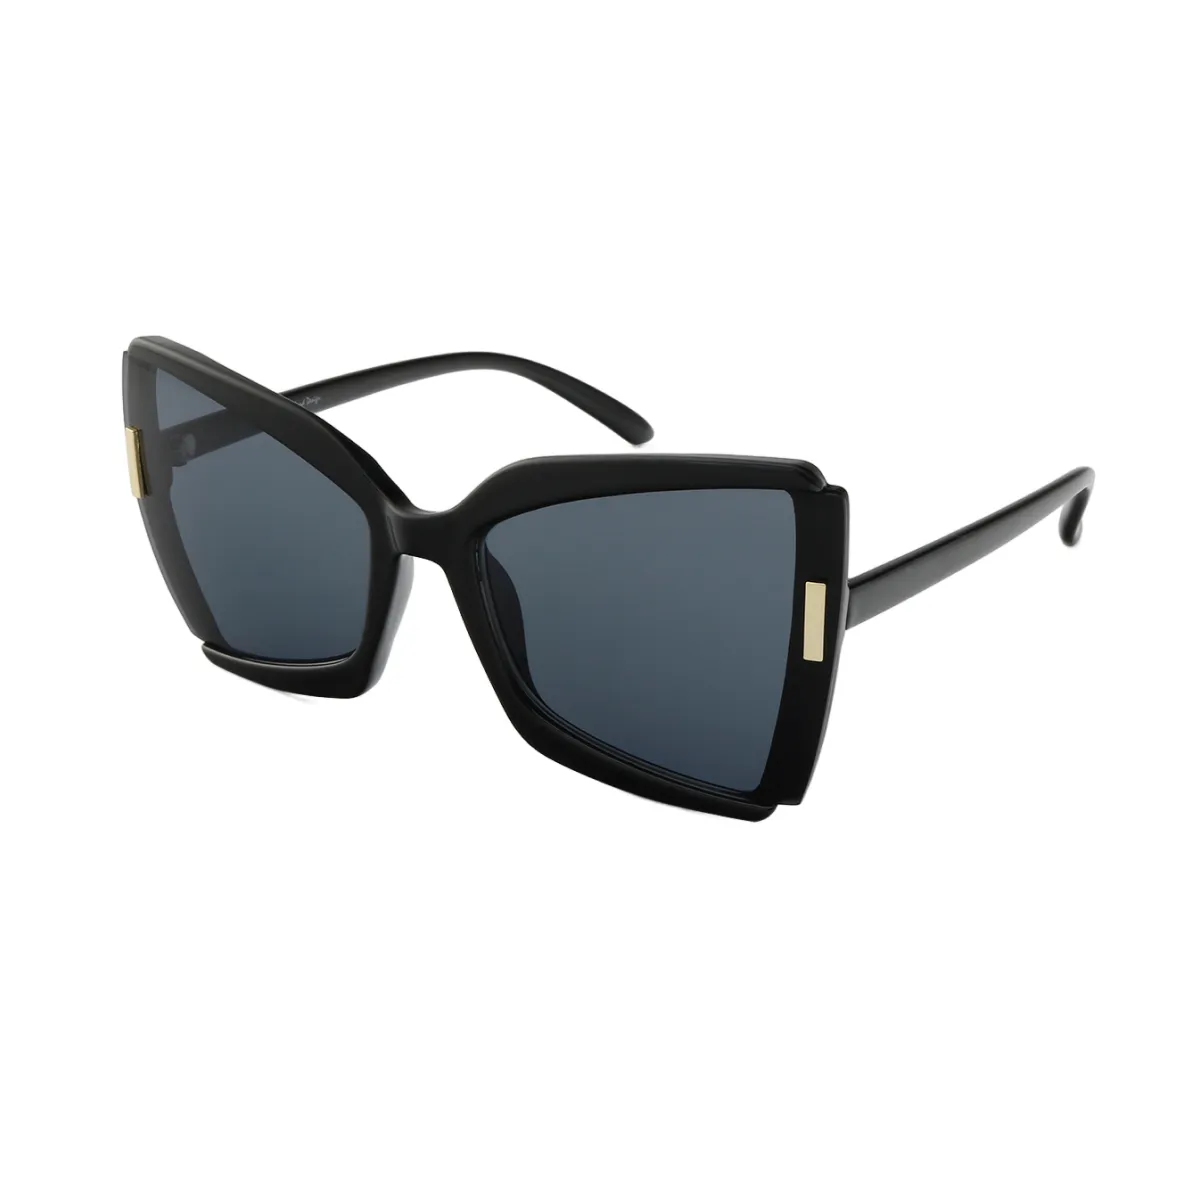 Fashion Square Black Sunglasses for Women